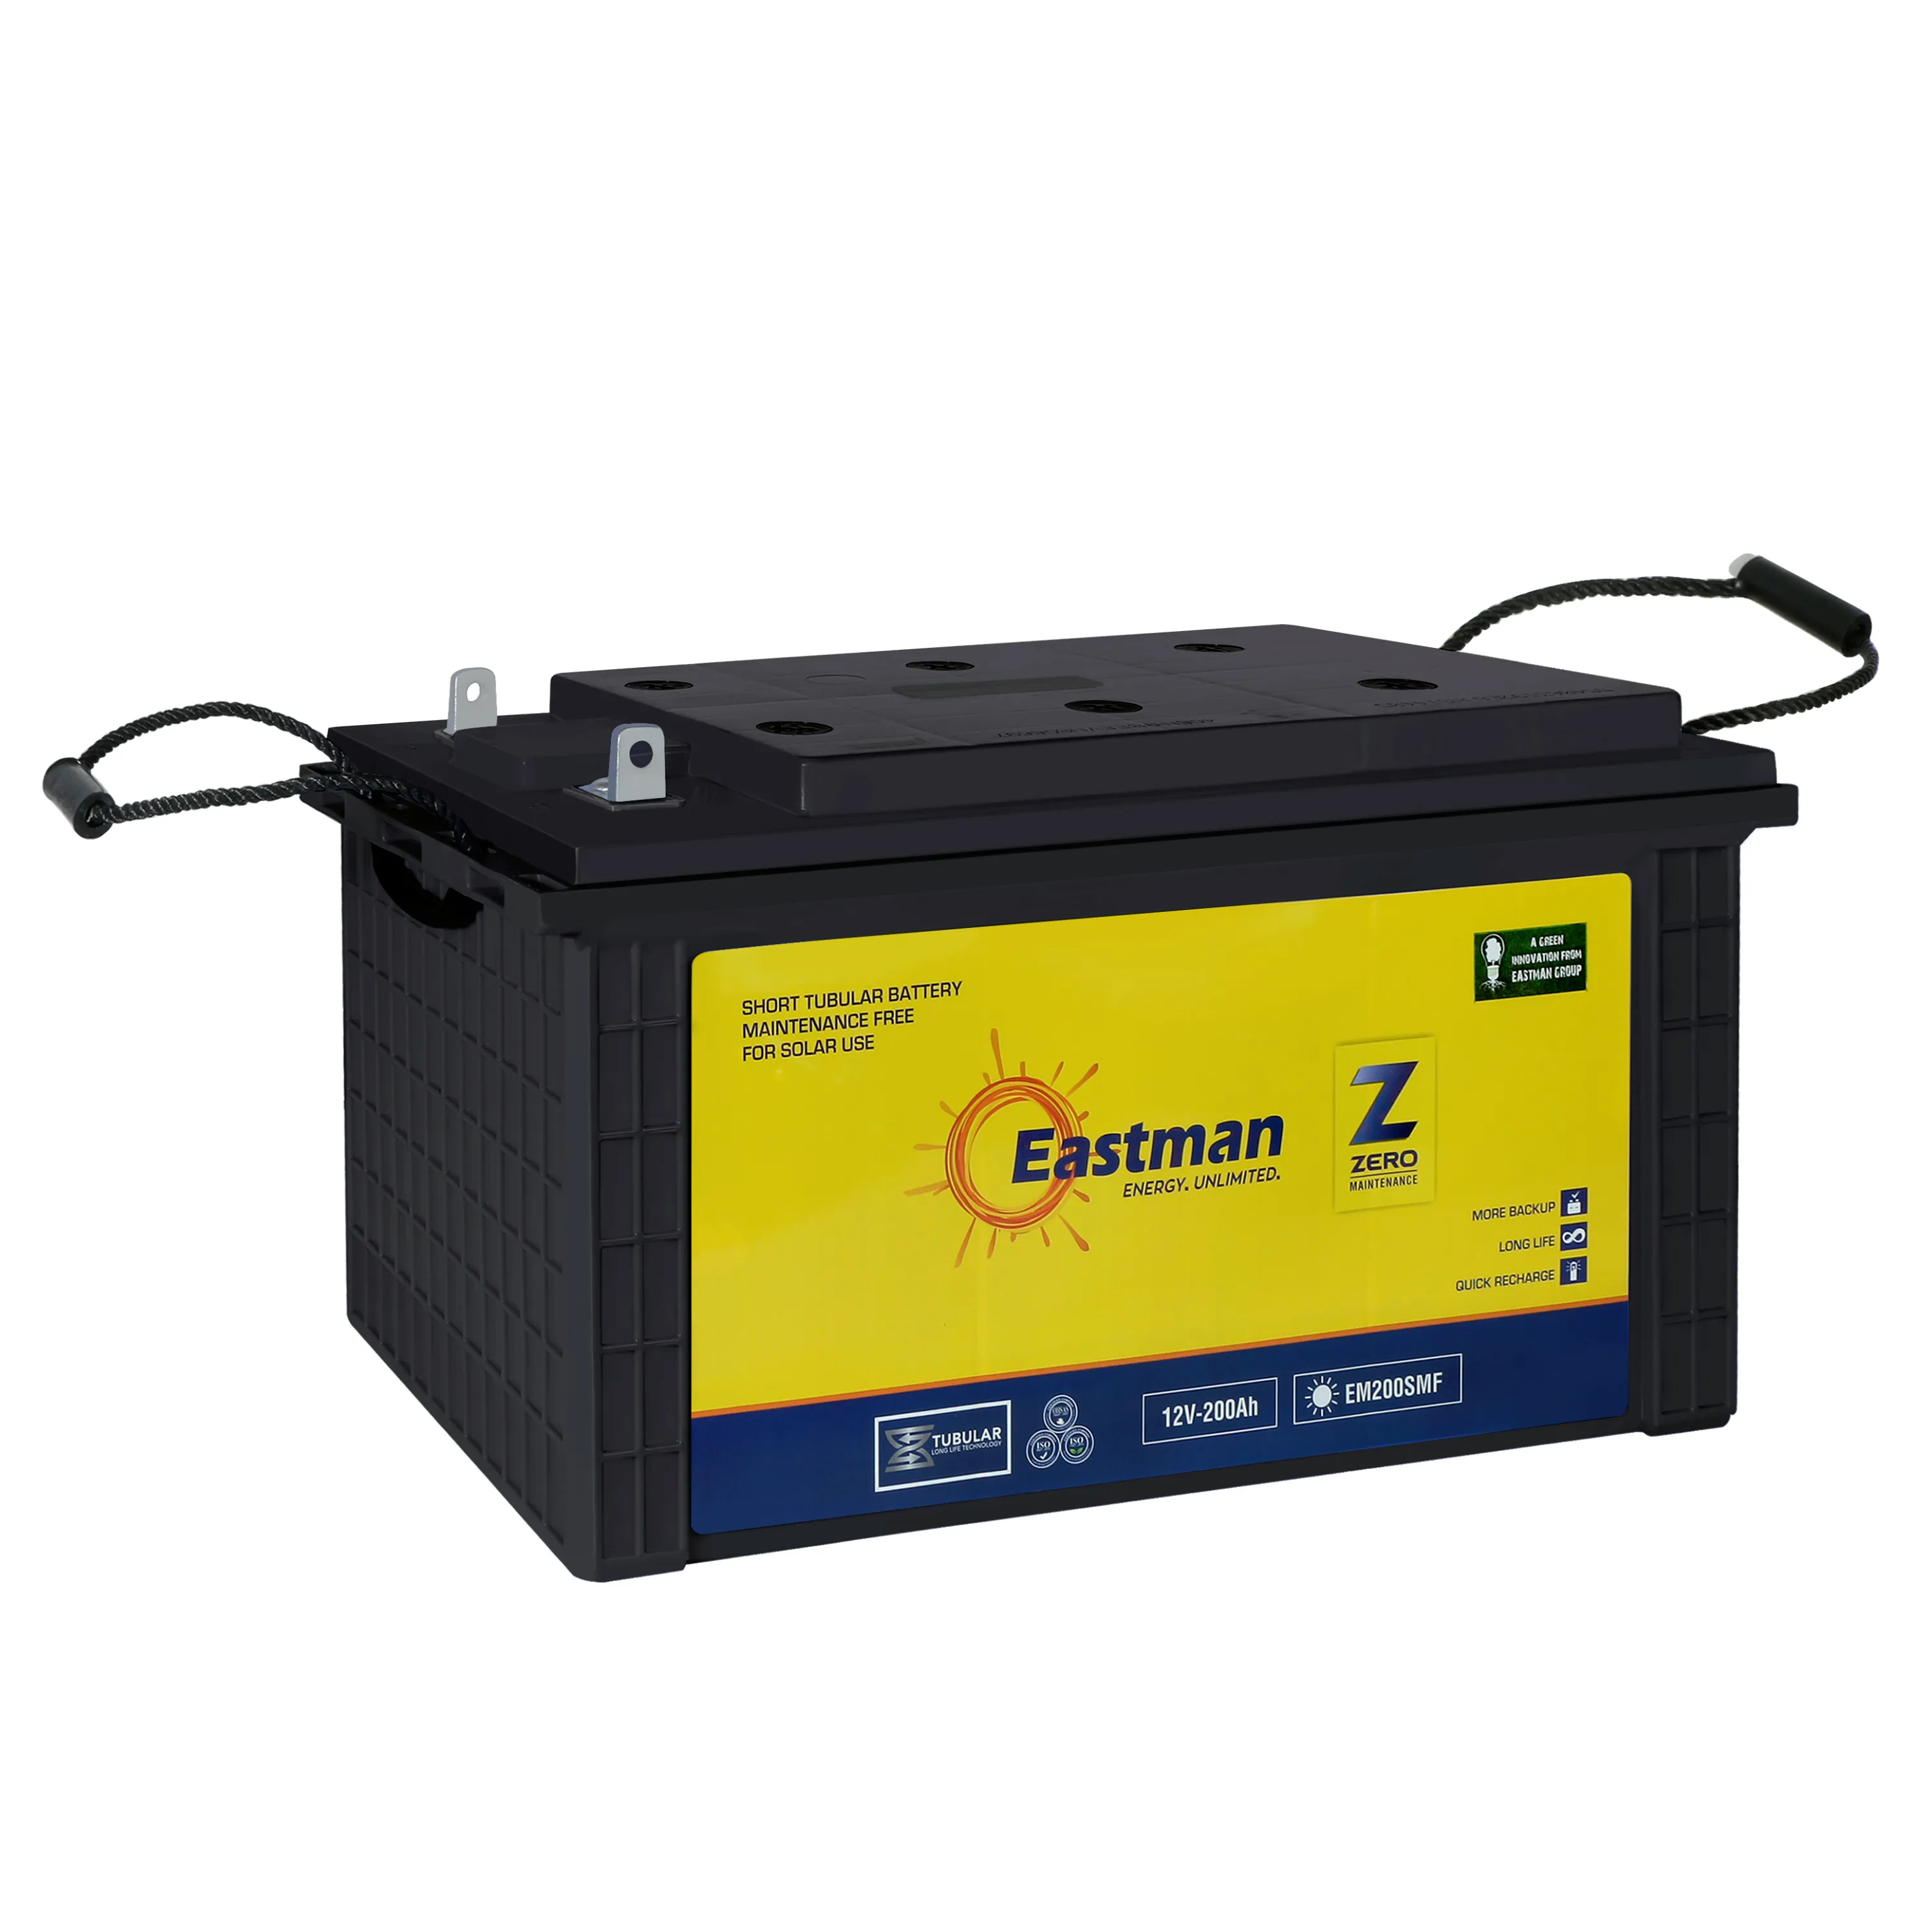 Eastman Auto & Power ограниченная из Индии перезаряжаемая солнечная батарея короткая трубчатая перезаряжаемая батарея экспортное качество